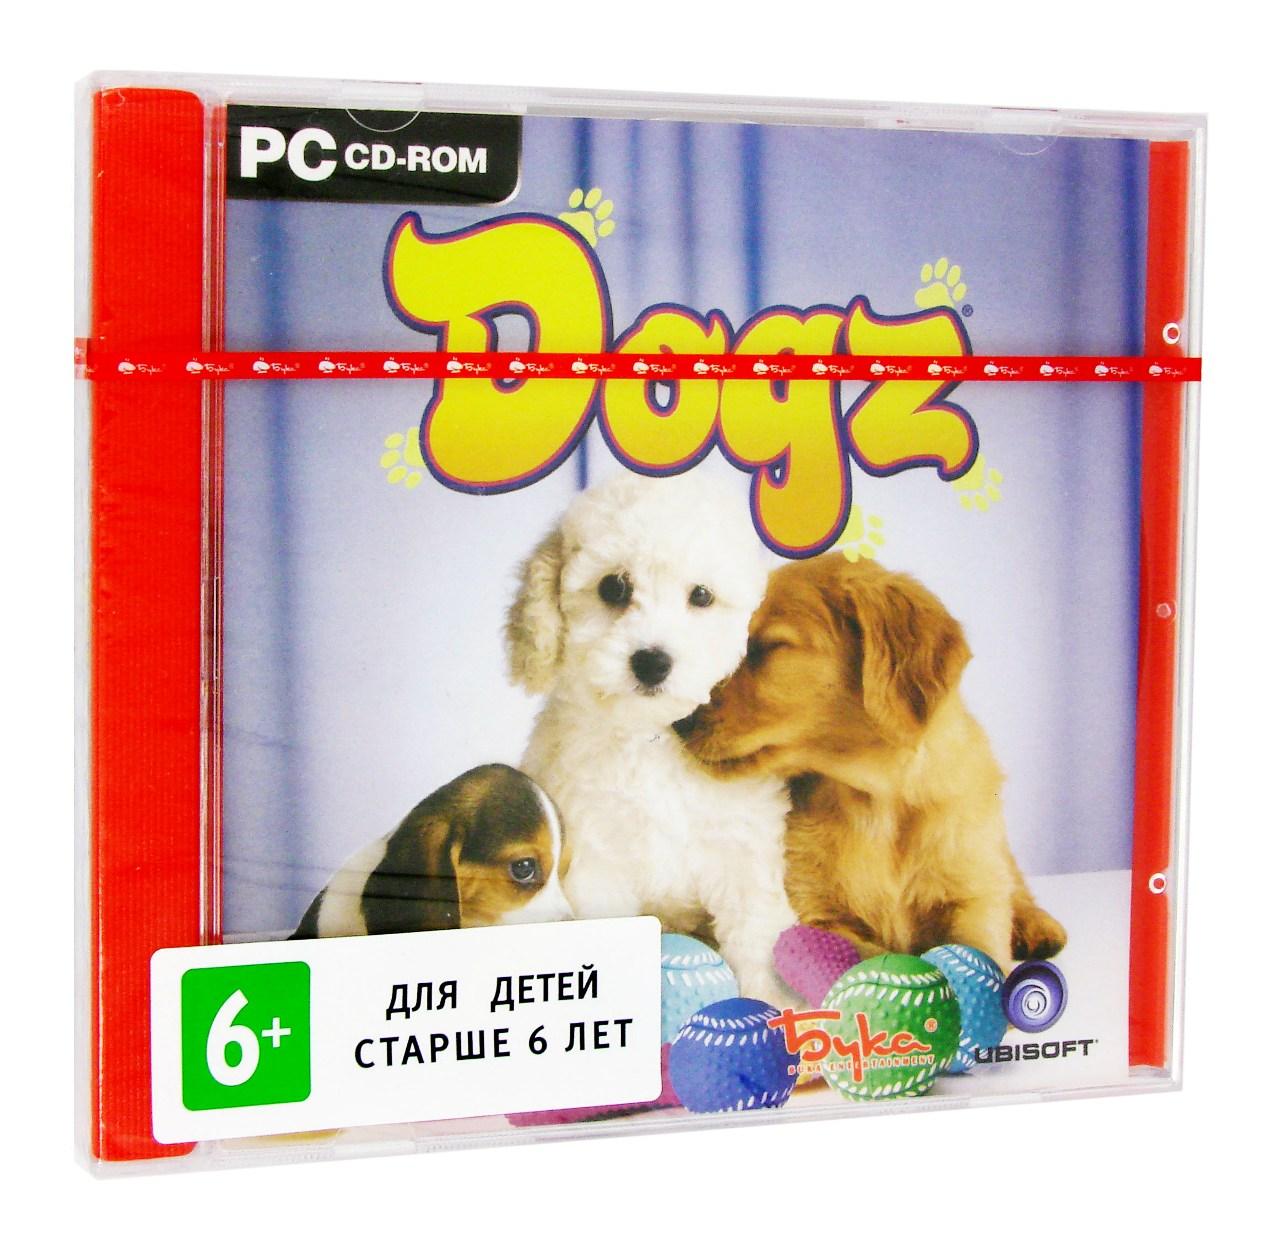  - Dogz 6 (PC),  "", 1CD